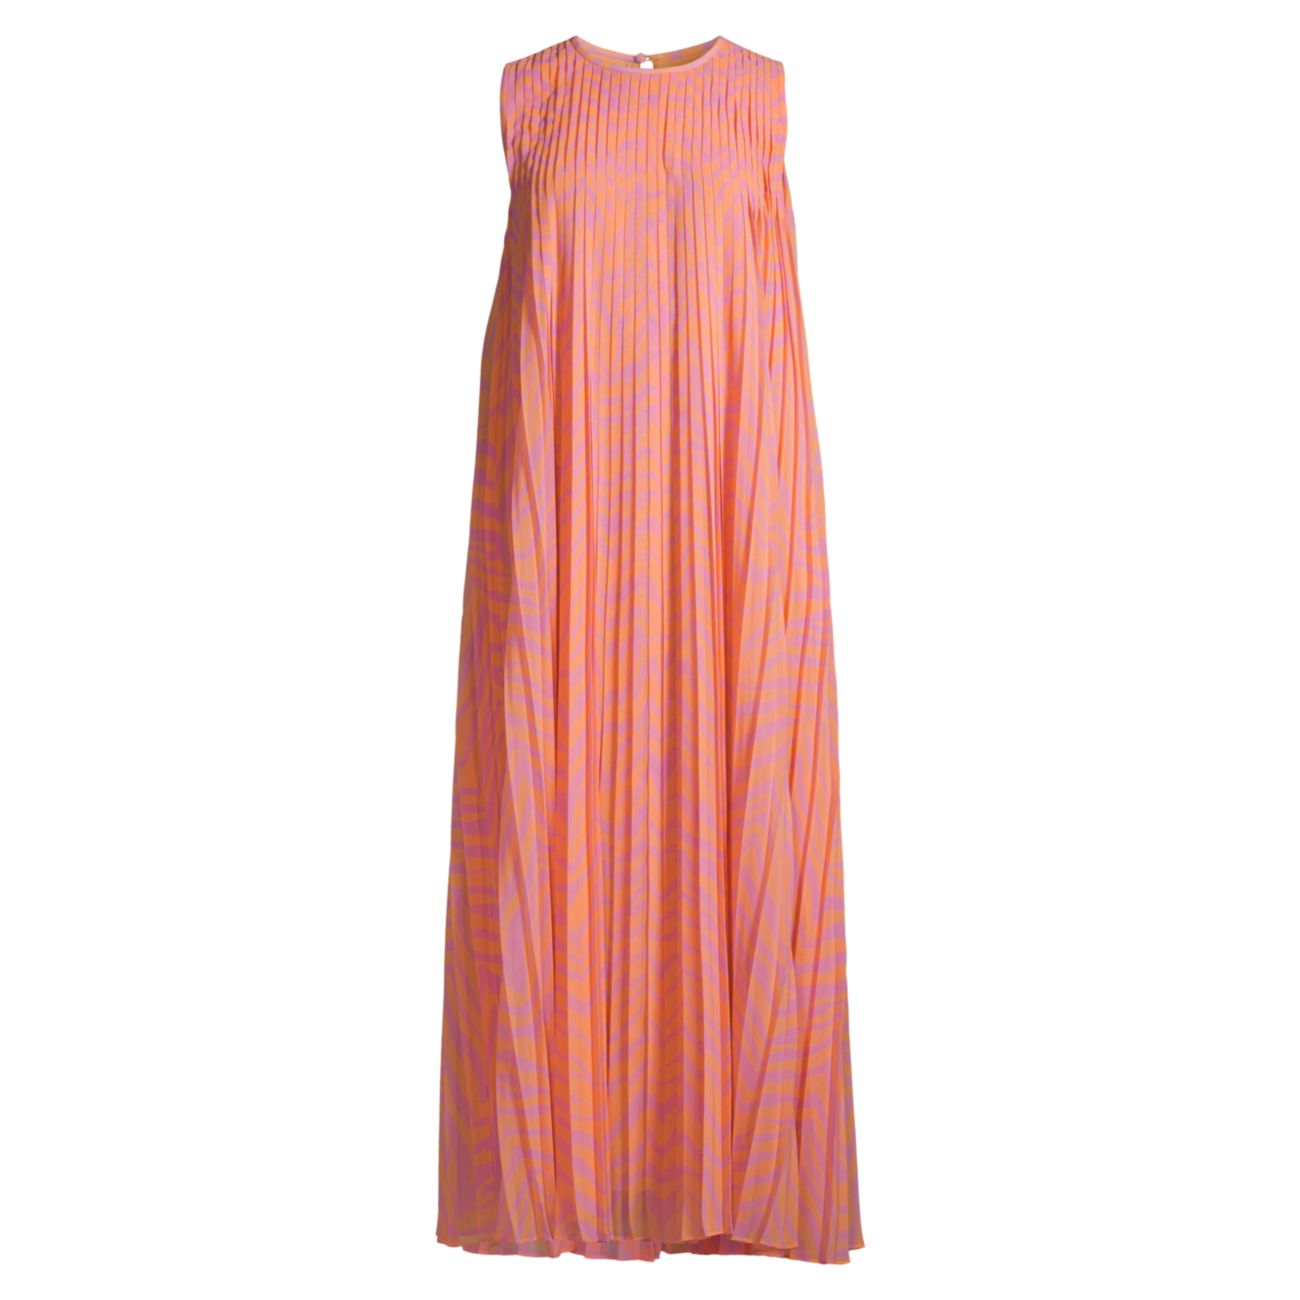 Плиссированное платье миди с шевронным принтом Willow Lafayette 148 New York